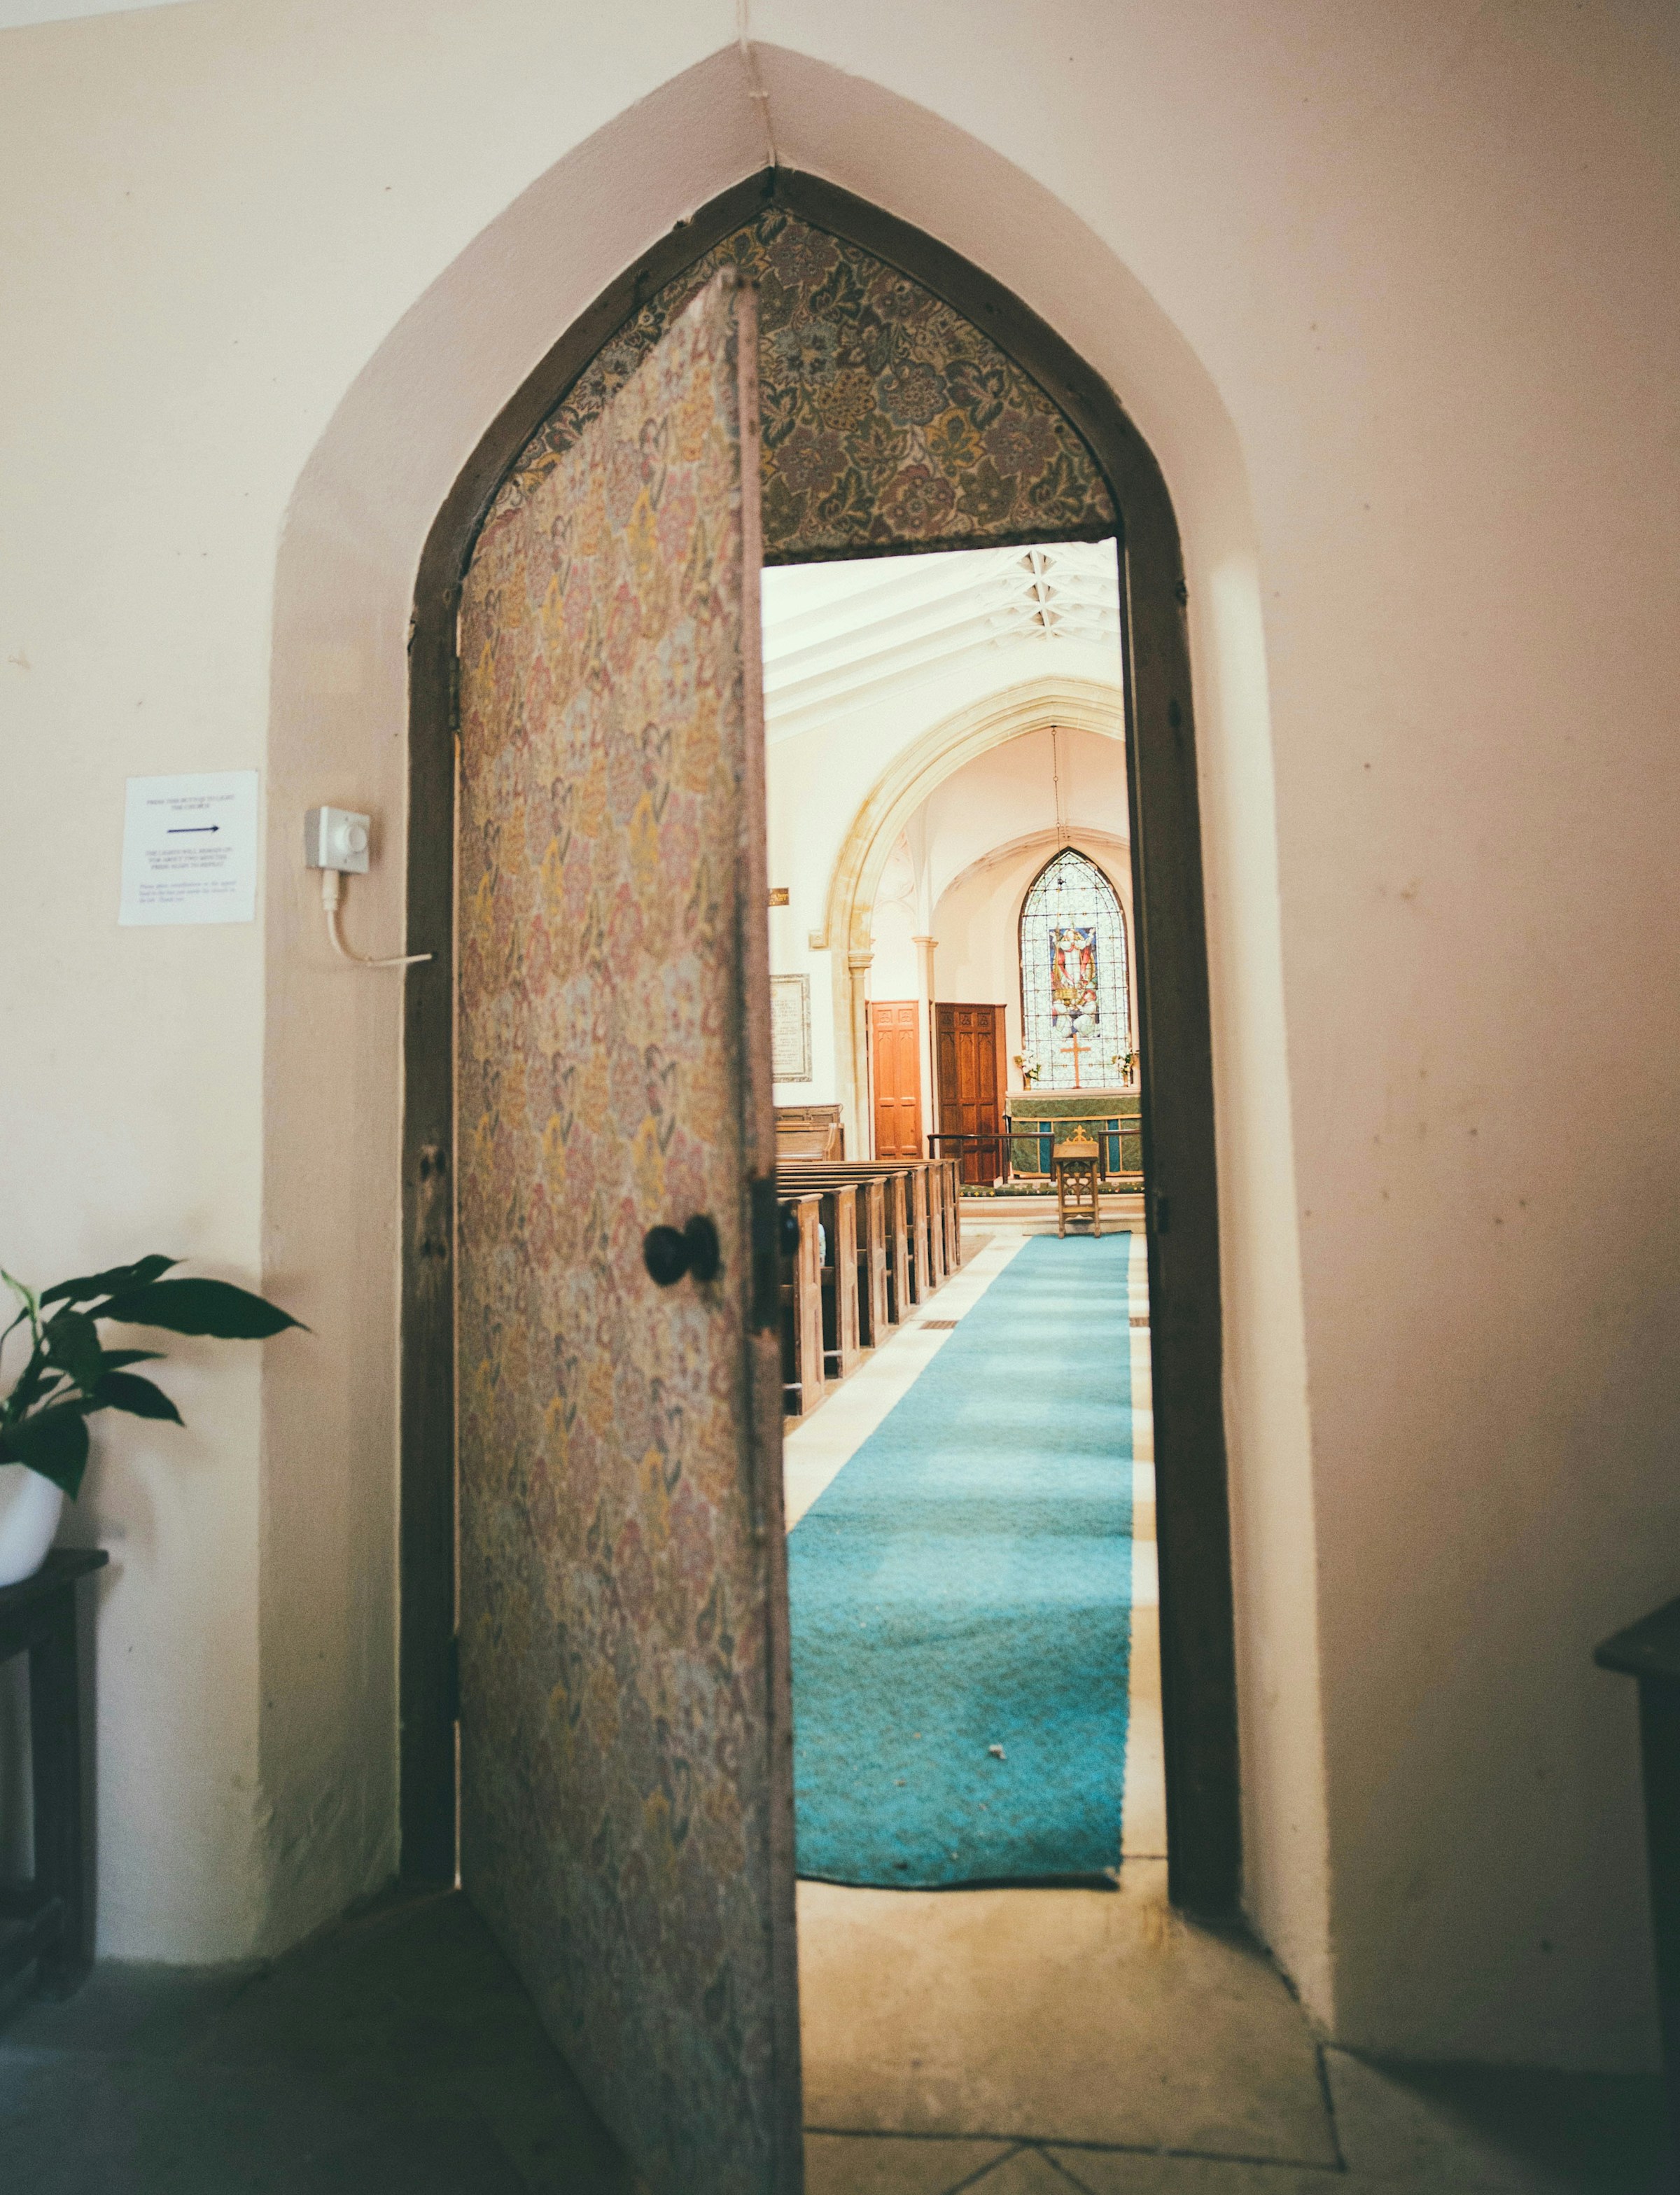 Une porte d'église ouverte | Source : Pexels